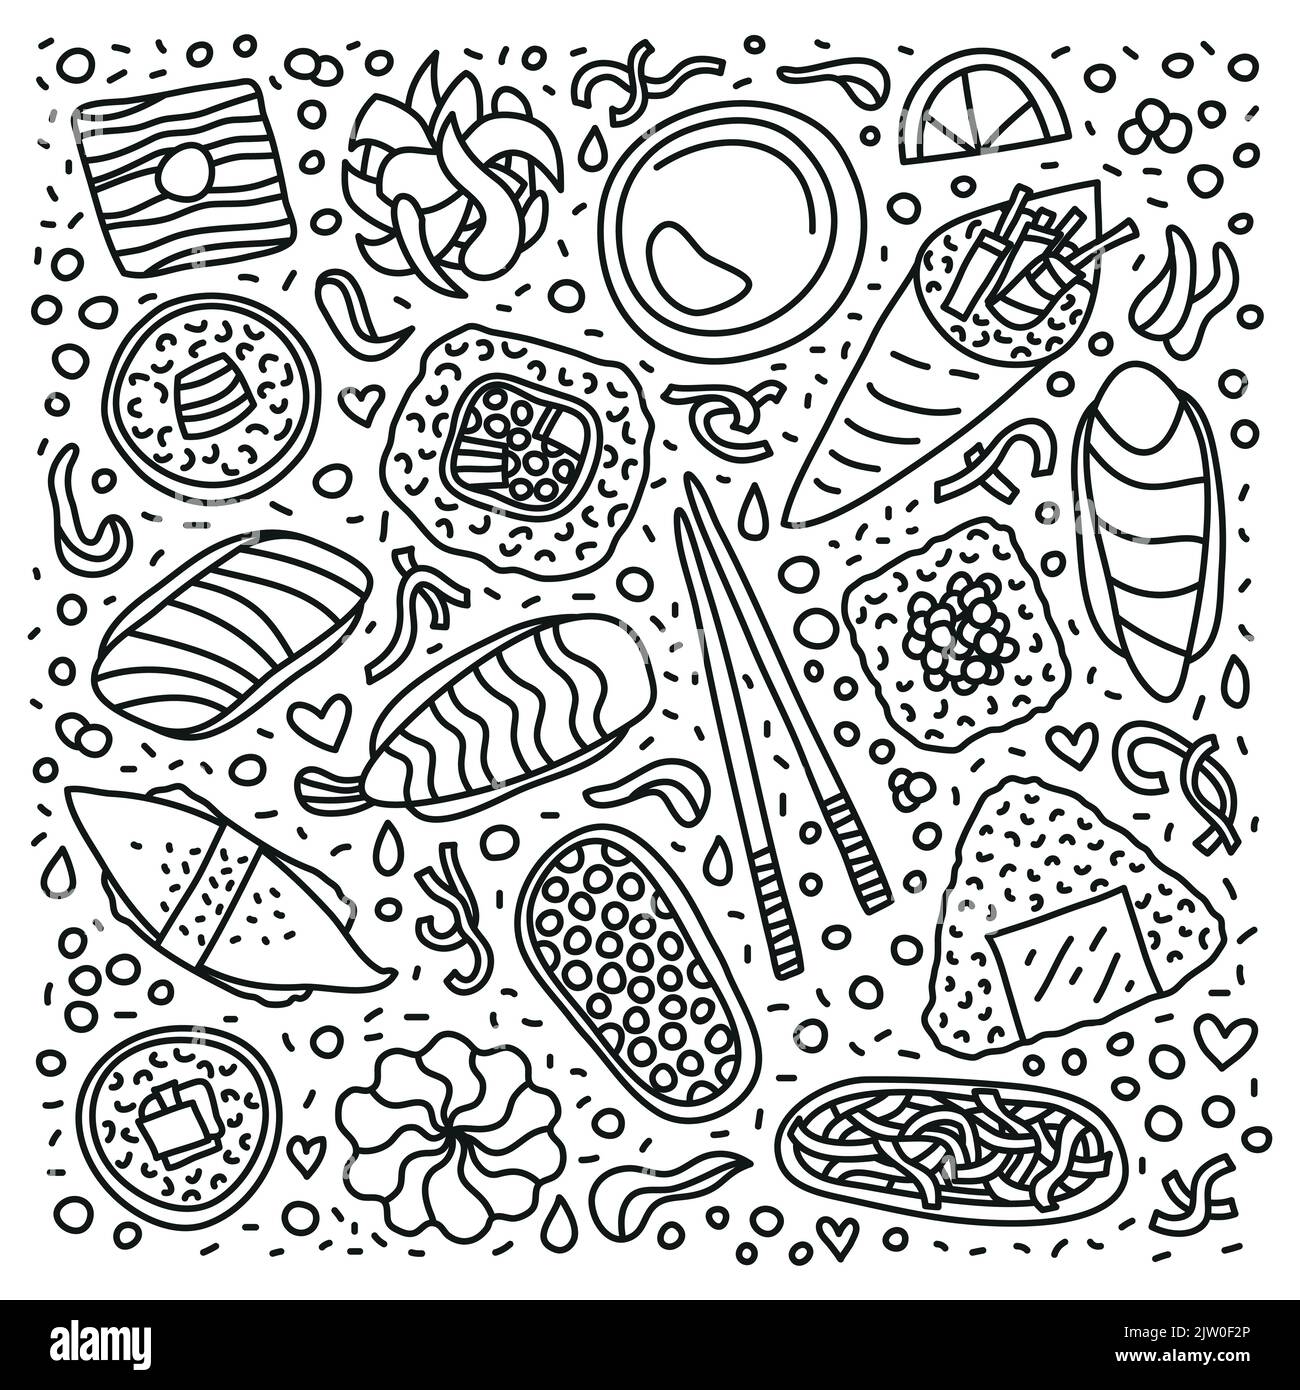 Les sushi, les rouleaux, les baguettes, le wasabi, le gingembre et les symboles isolés sur fond blanc sont les ingrédients de Doodle. Illustration de Vecteur